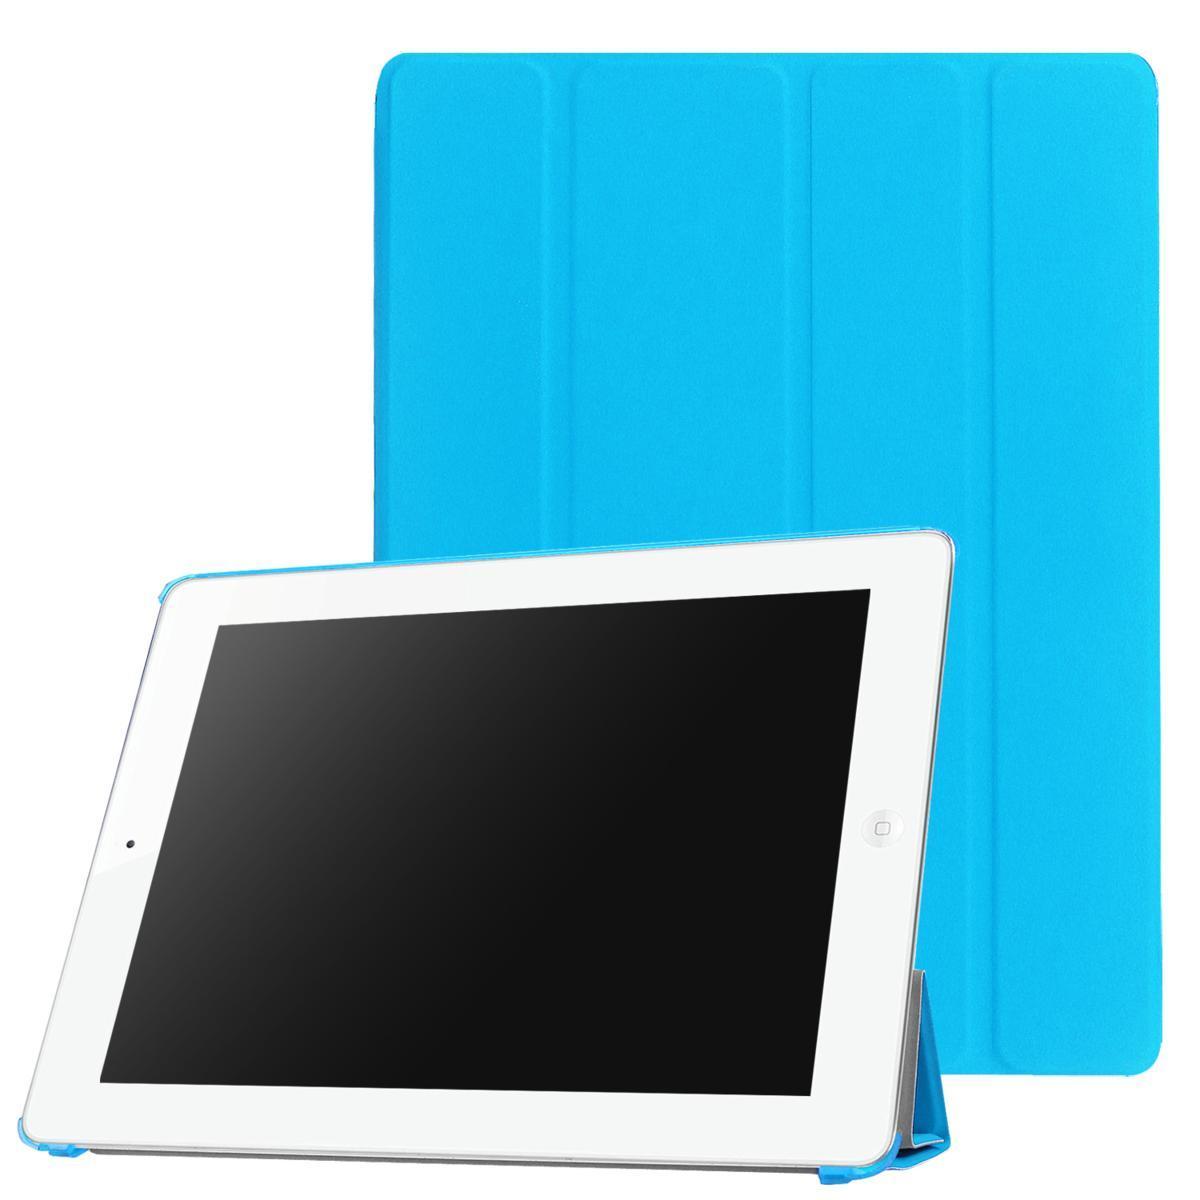 【送料無料】iPad 2/3/4 用 PUレザーケース スマートカバー 超薄 軽量型 スタンド機能 高品質PUレザーケース シーブルー_画像1